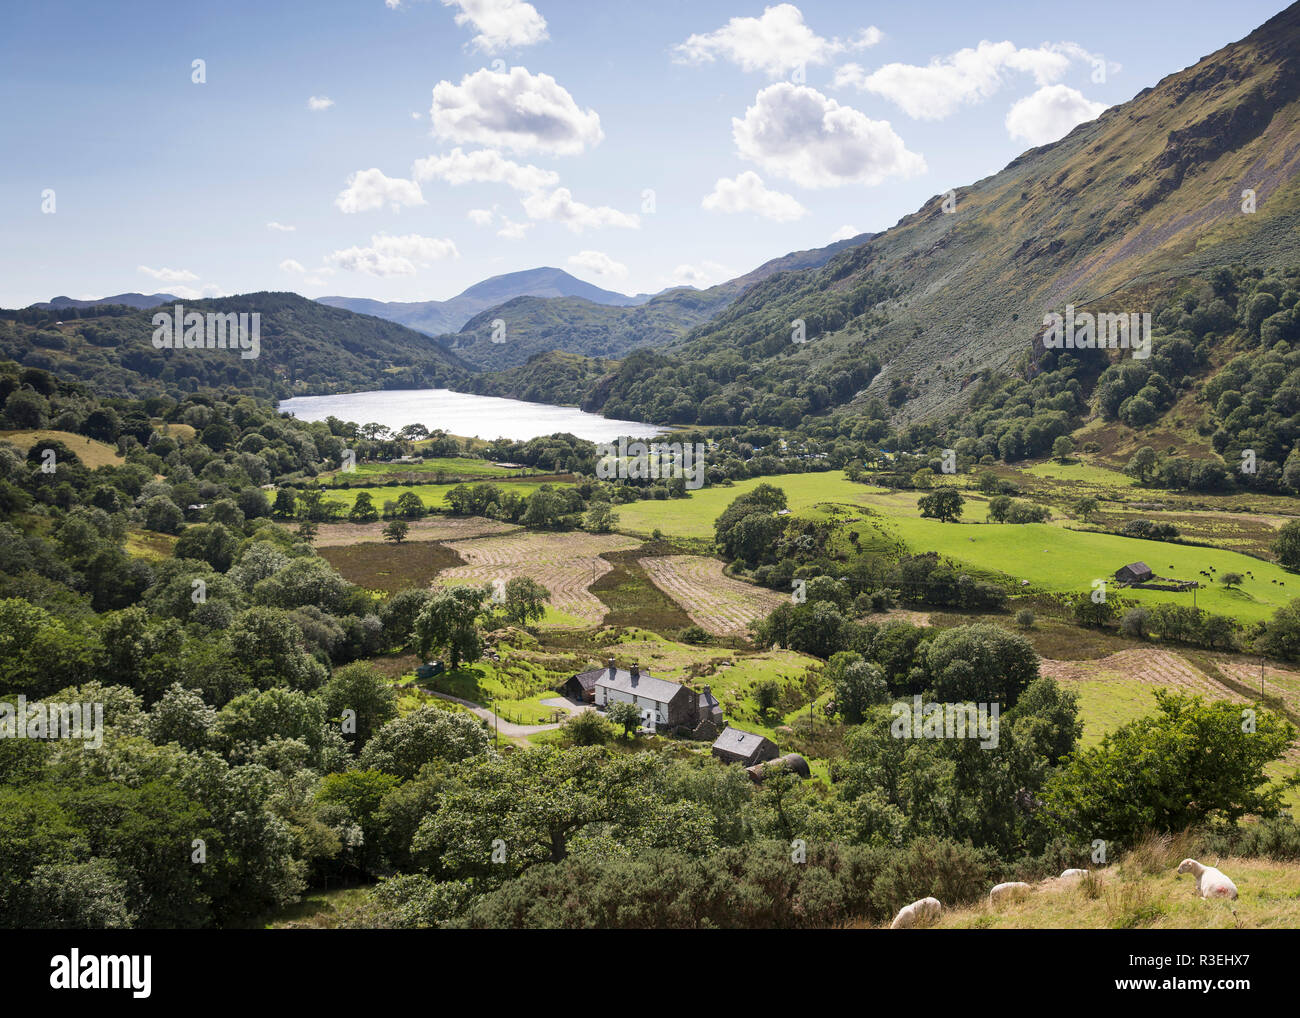 Landscape view of Lyn Gwynant, Nant Gwynant valley, Gwynedd, Snowdonia National Park, Wales, UK Stock Photo